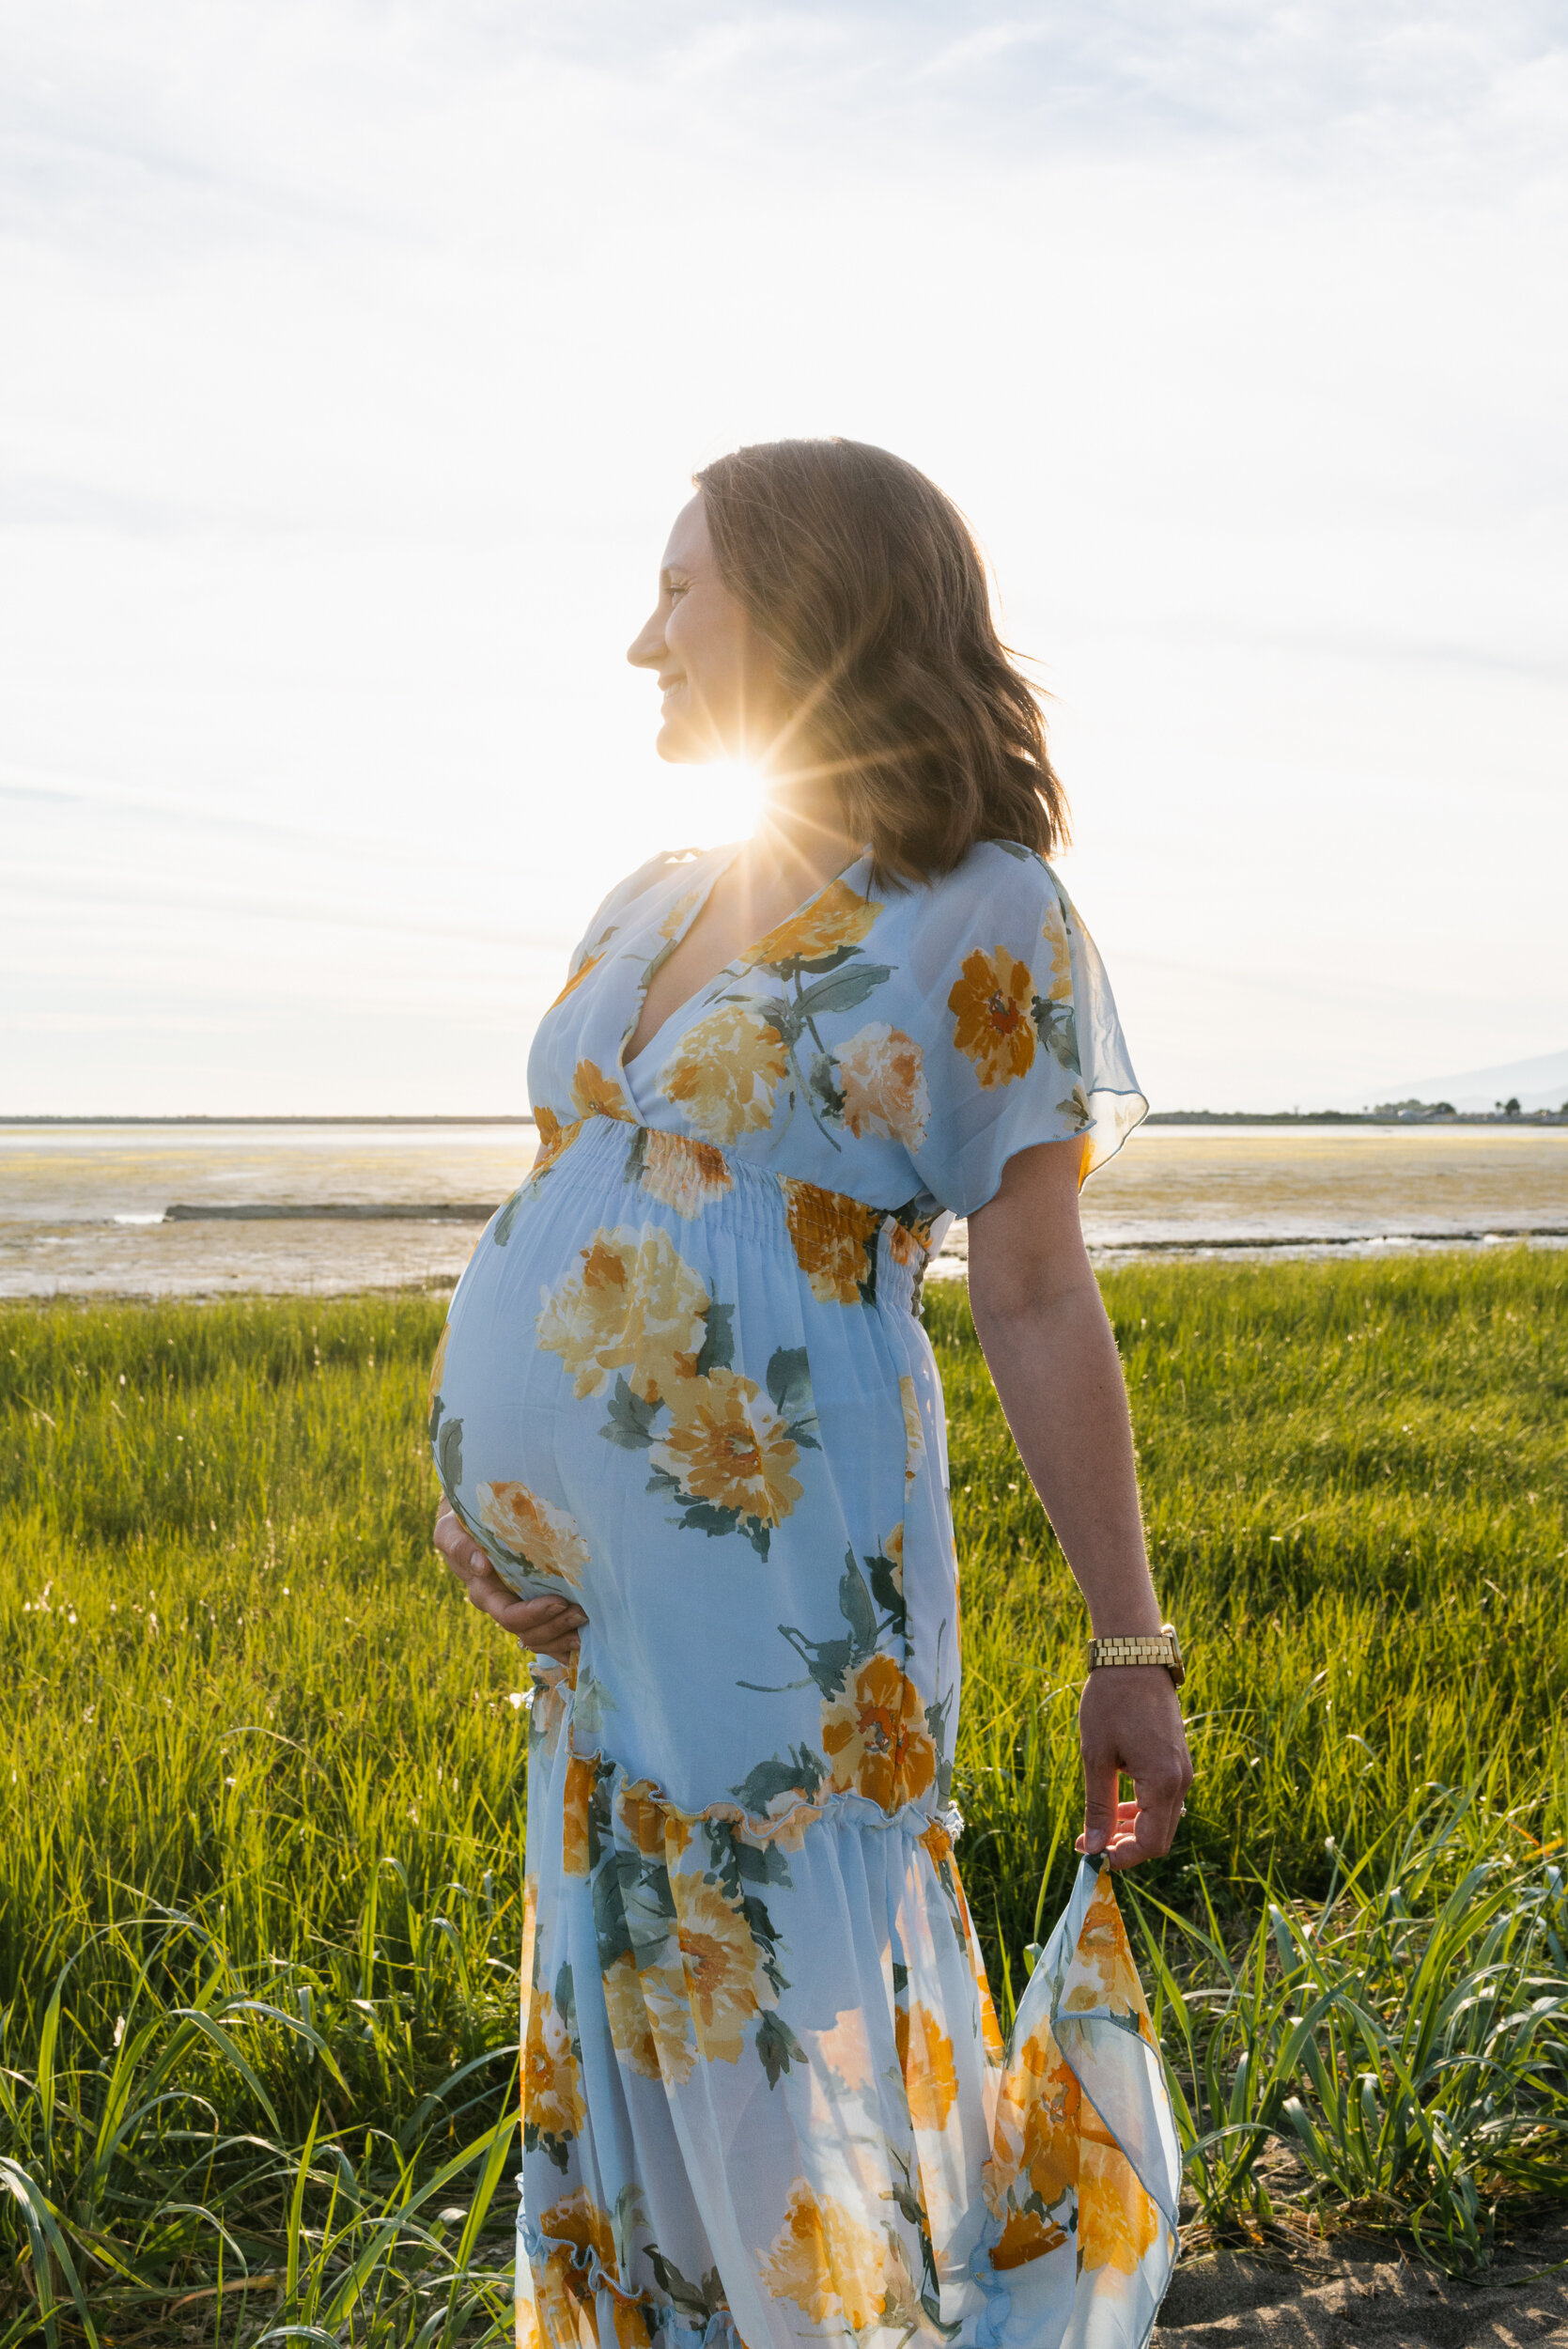 Pregnant woman beach grass sunset